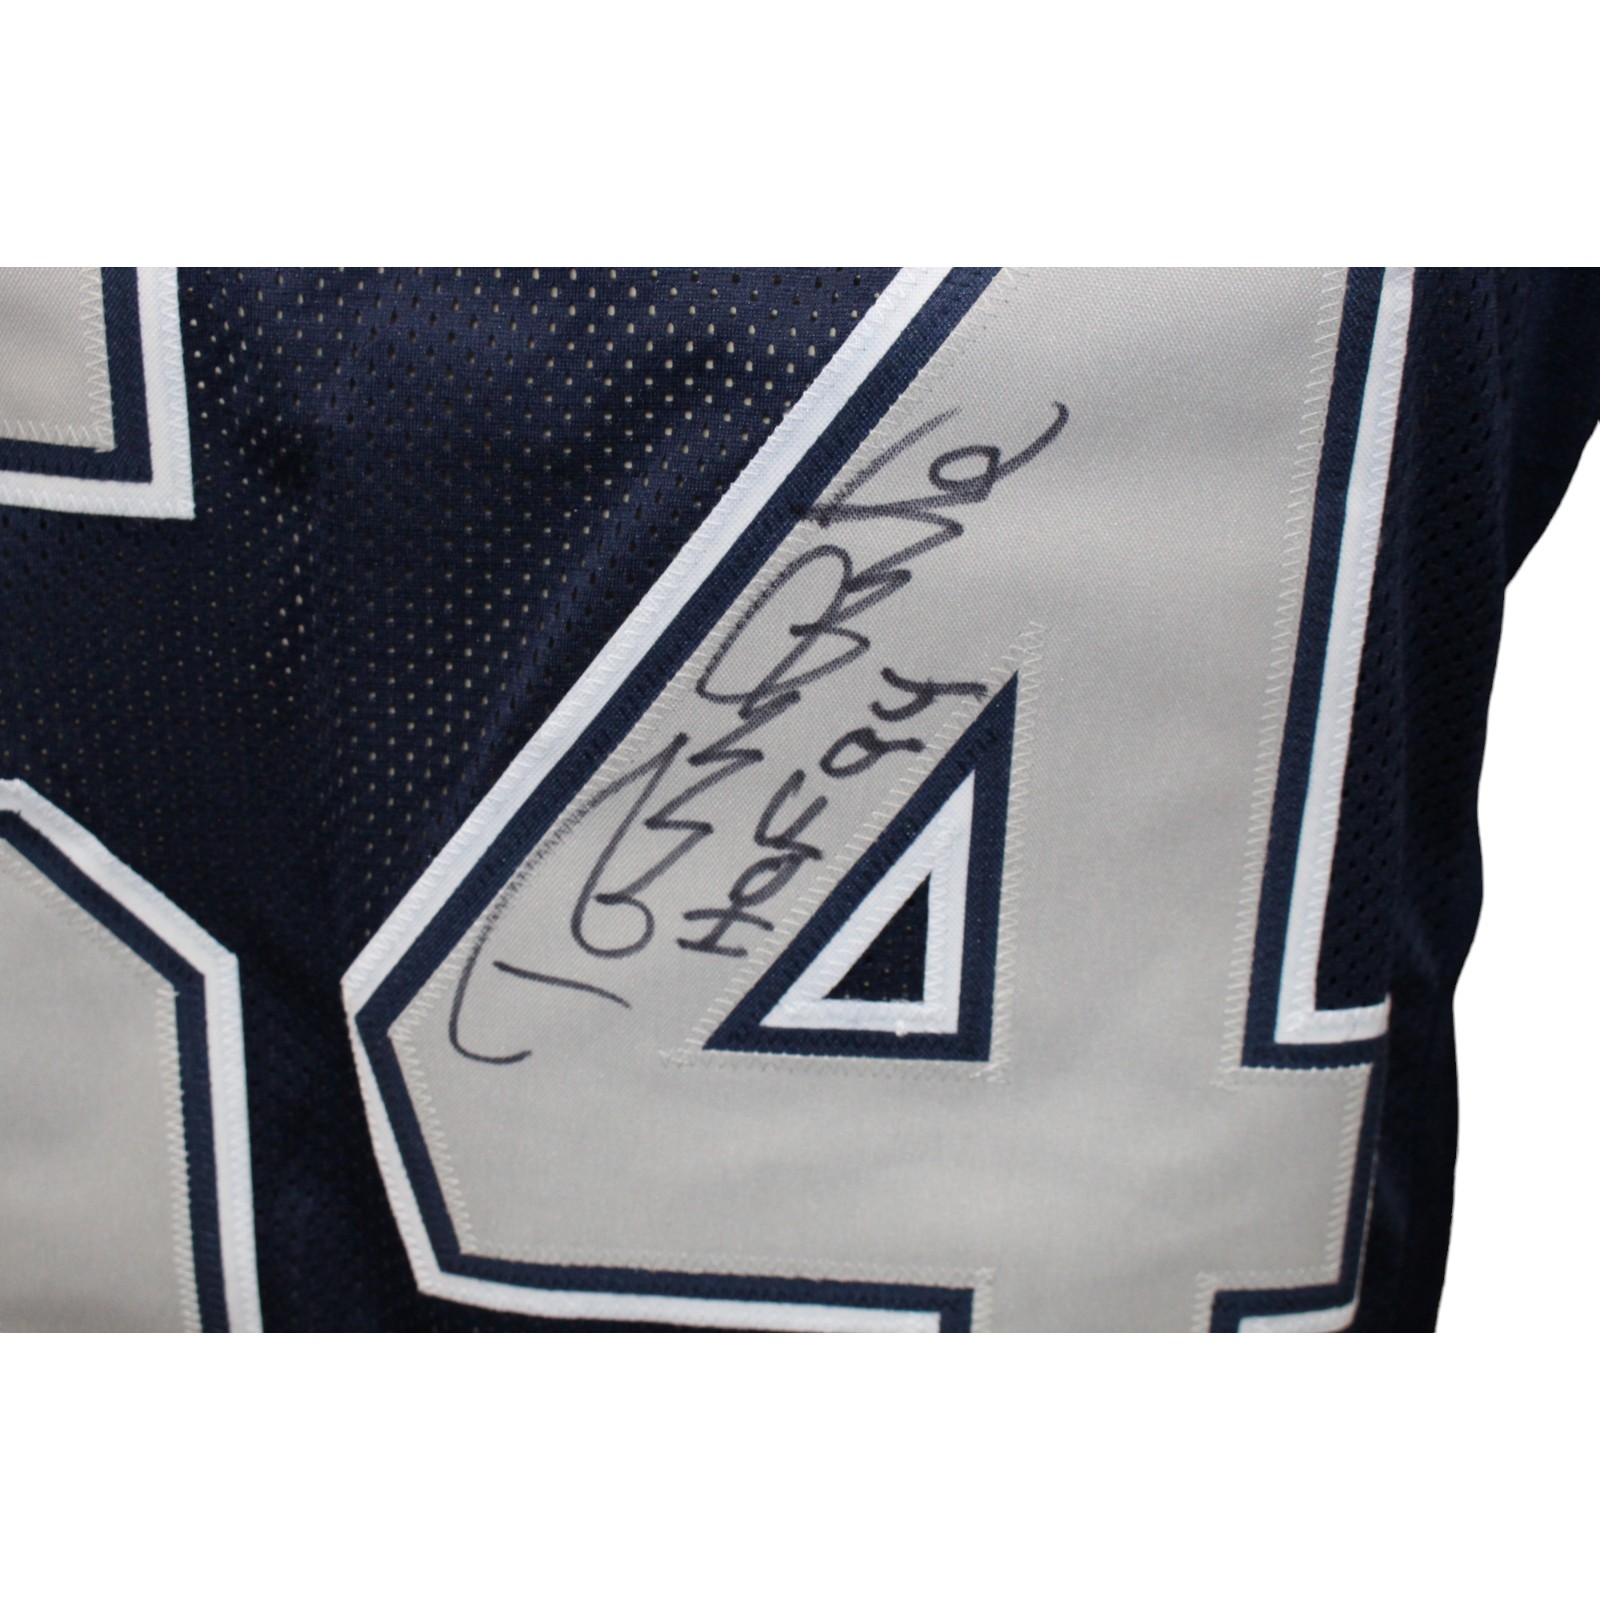 Randy White Autographed/Signed Pro Style Blue Jersey JSA